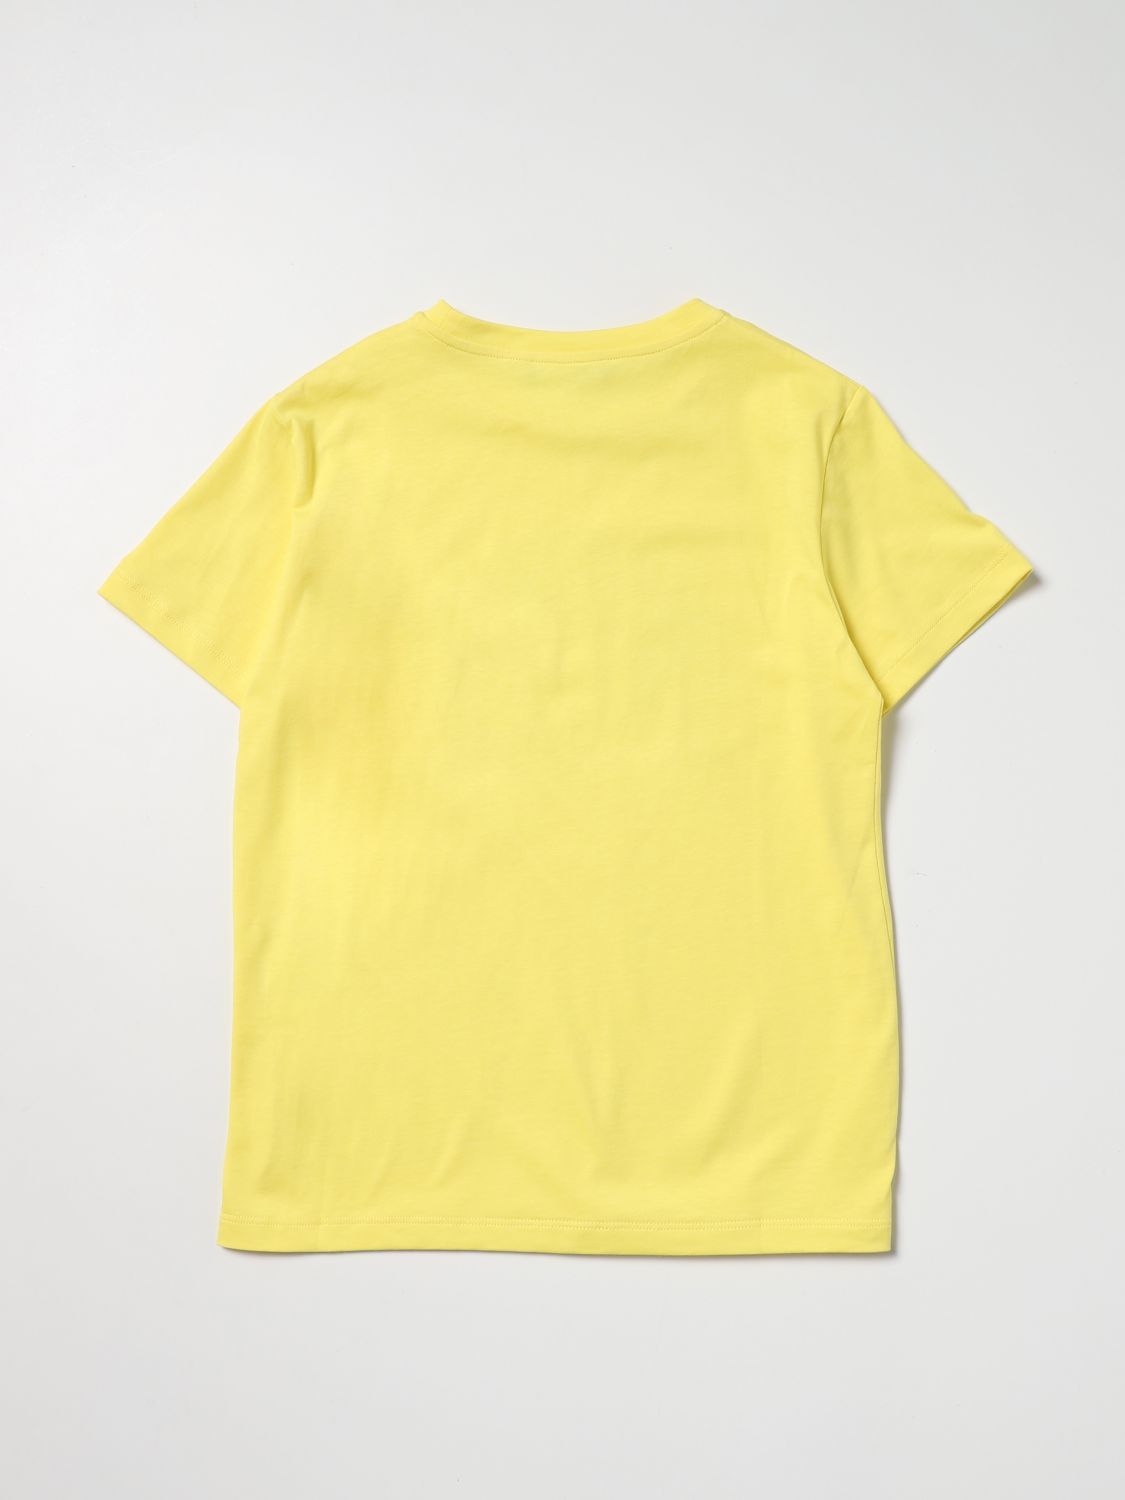 티셔츠 영 베르사체: 티셔츠 Young Versace 여아 옐로우 2